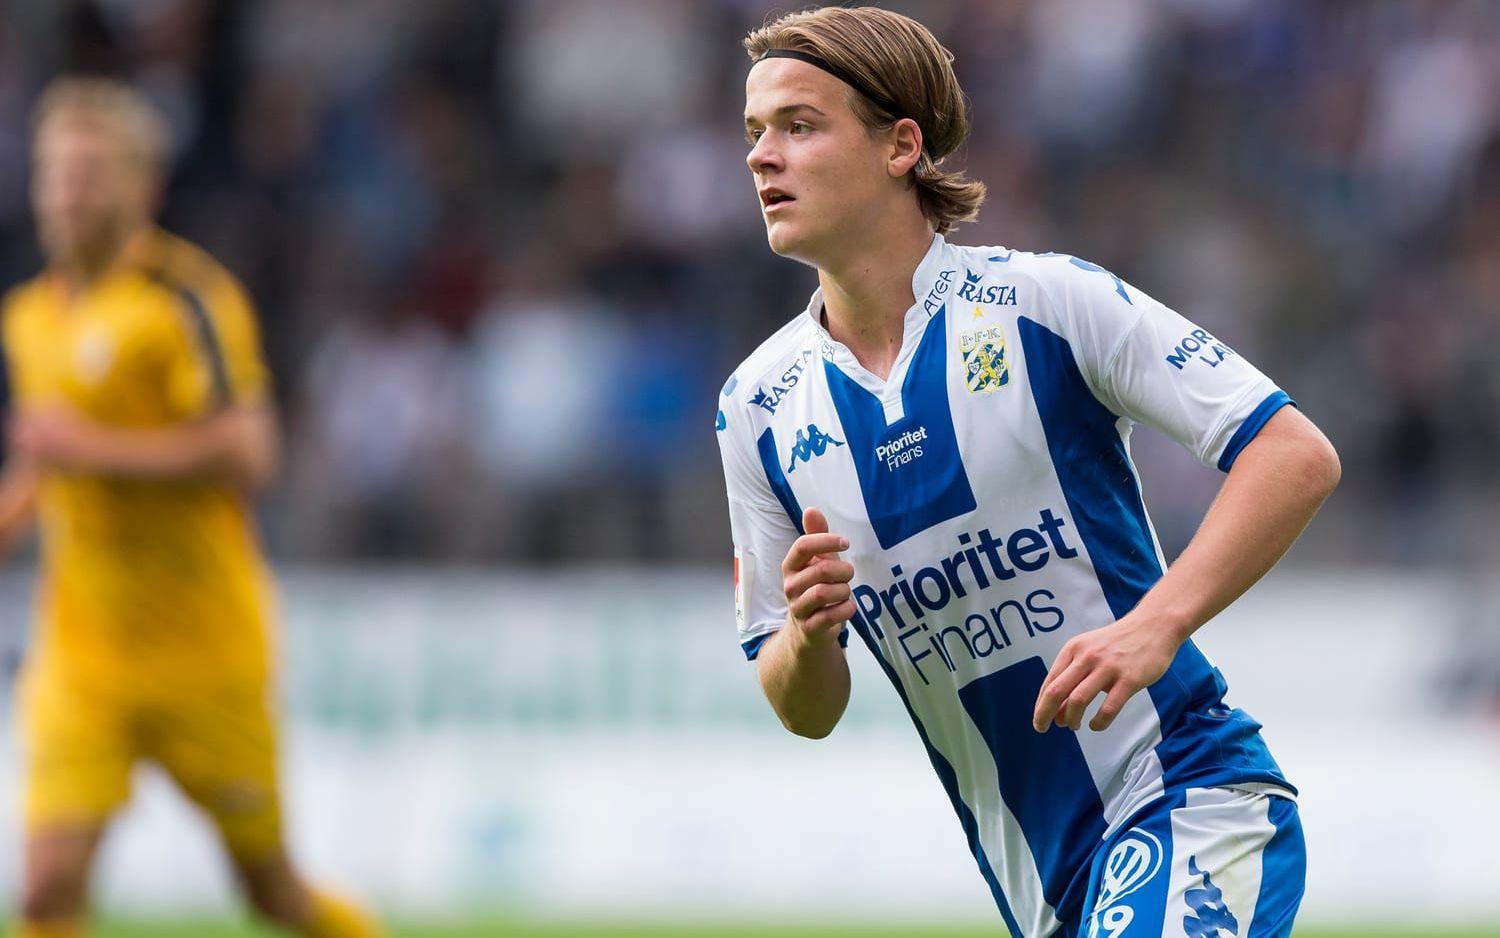 August Erlingmark, fotboll, spelare i IFK Göteborg. ”Valhamra IP, Sävedalen. Många minnen därifrån, skön stämning”.